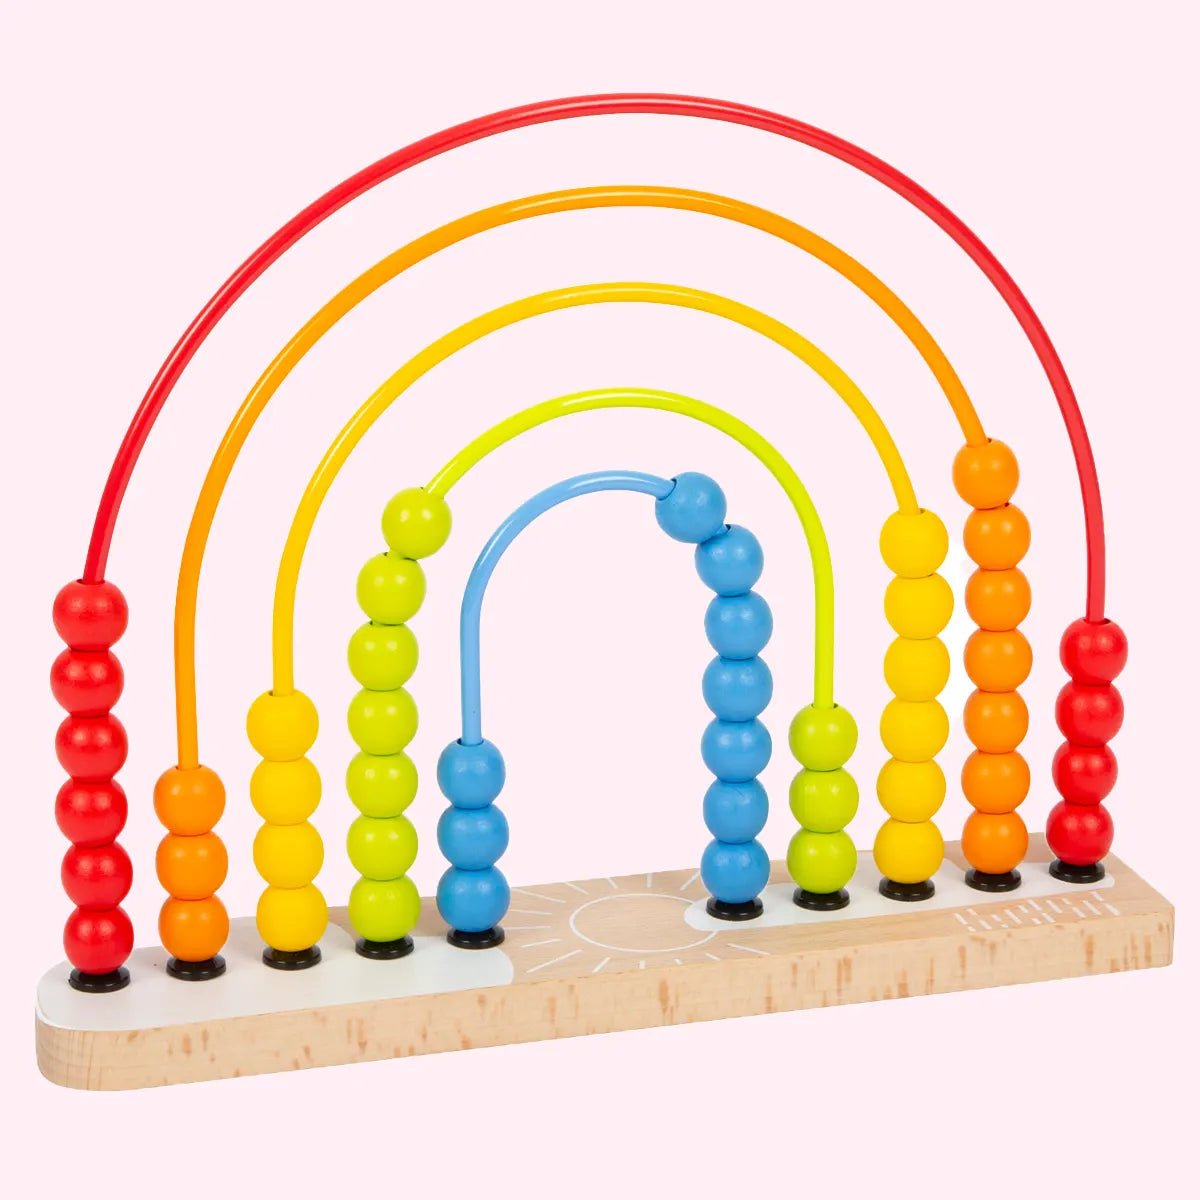 Wooden Abacus Toys - Zidar Kid